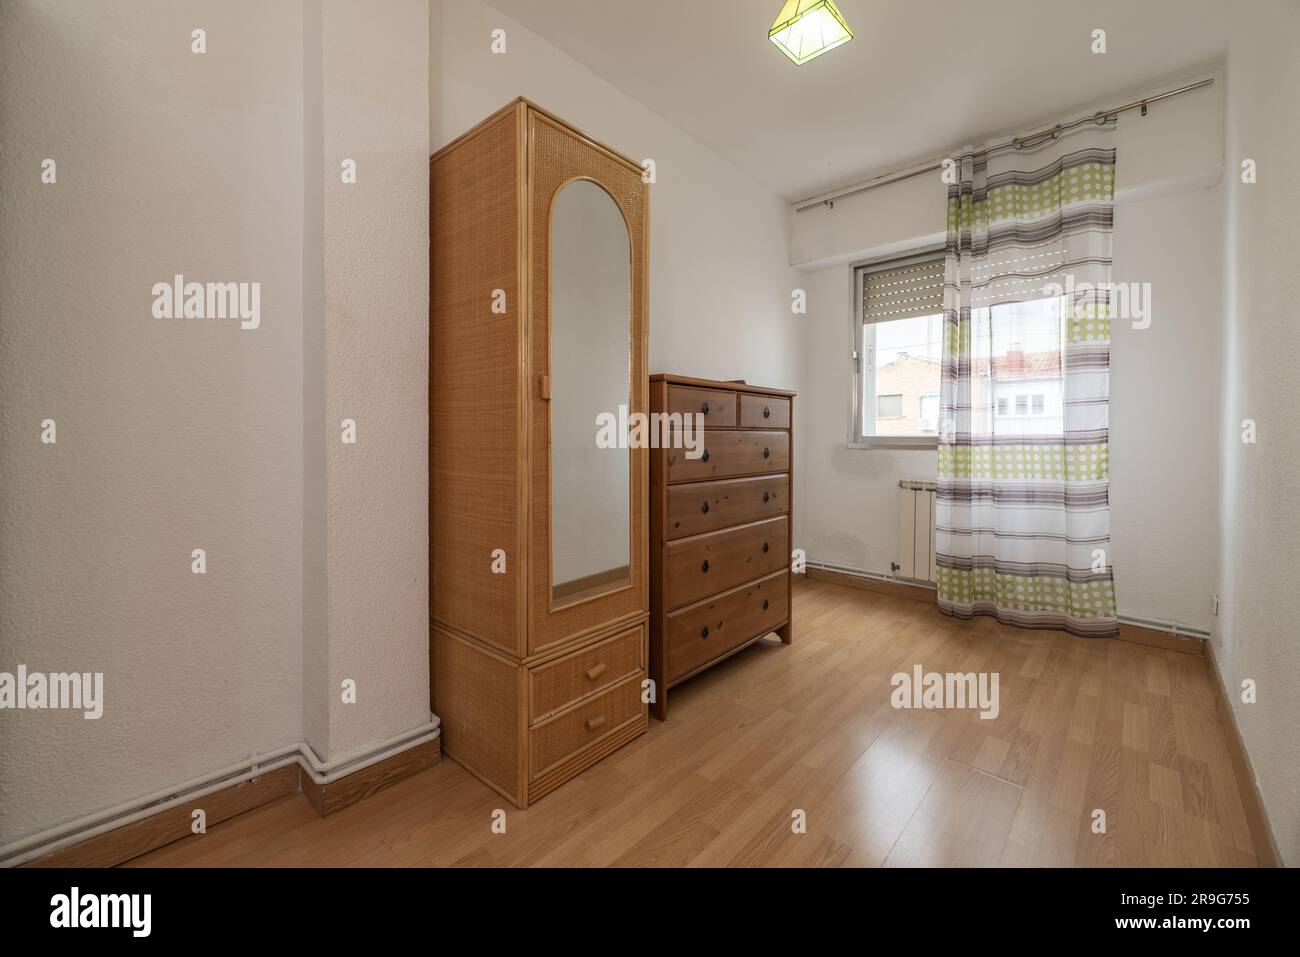 Ein teilweise leerer Raum mit einem schmalen Korbgarderobe mit Spiegel und einer Holzschränke mit Schubladen und Belüftung mit Vorhängen Stockfoto